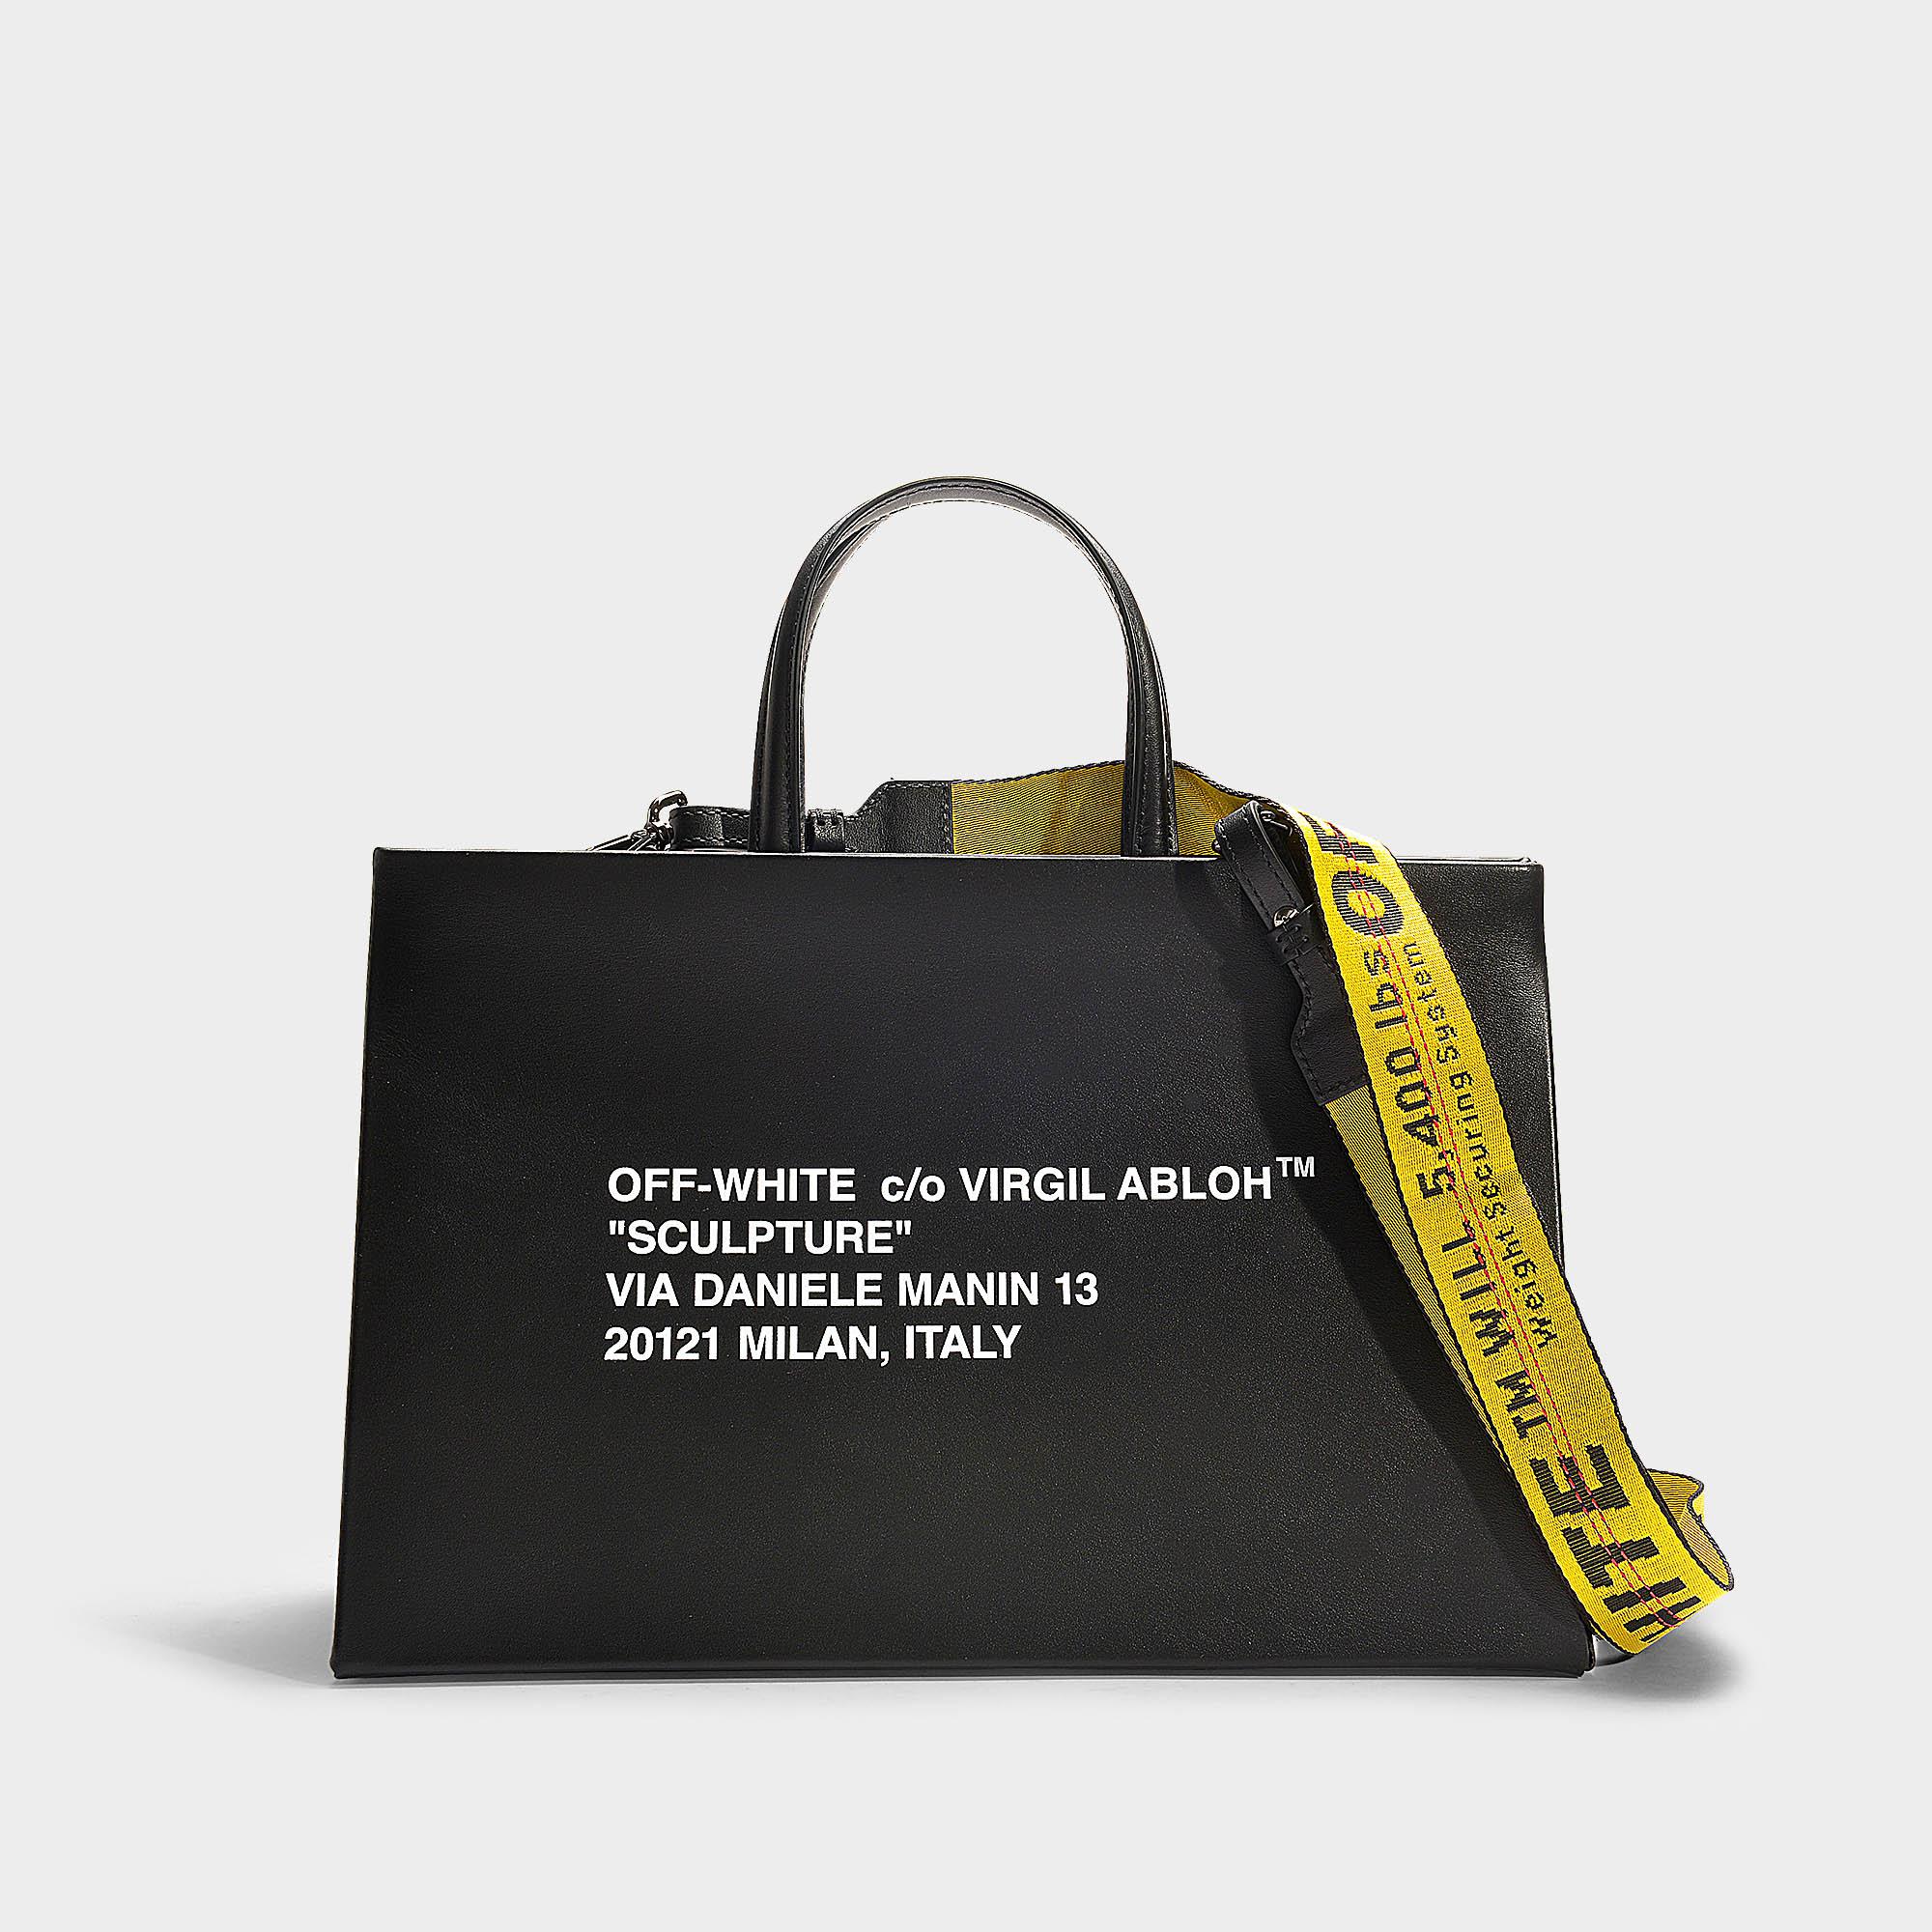 Off-White c/o Virgil Abloh Medium Box Bag In Black And White Calfskin | Lyst